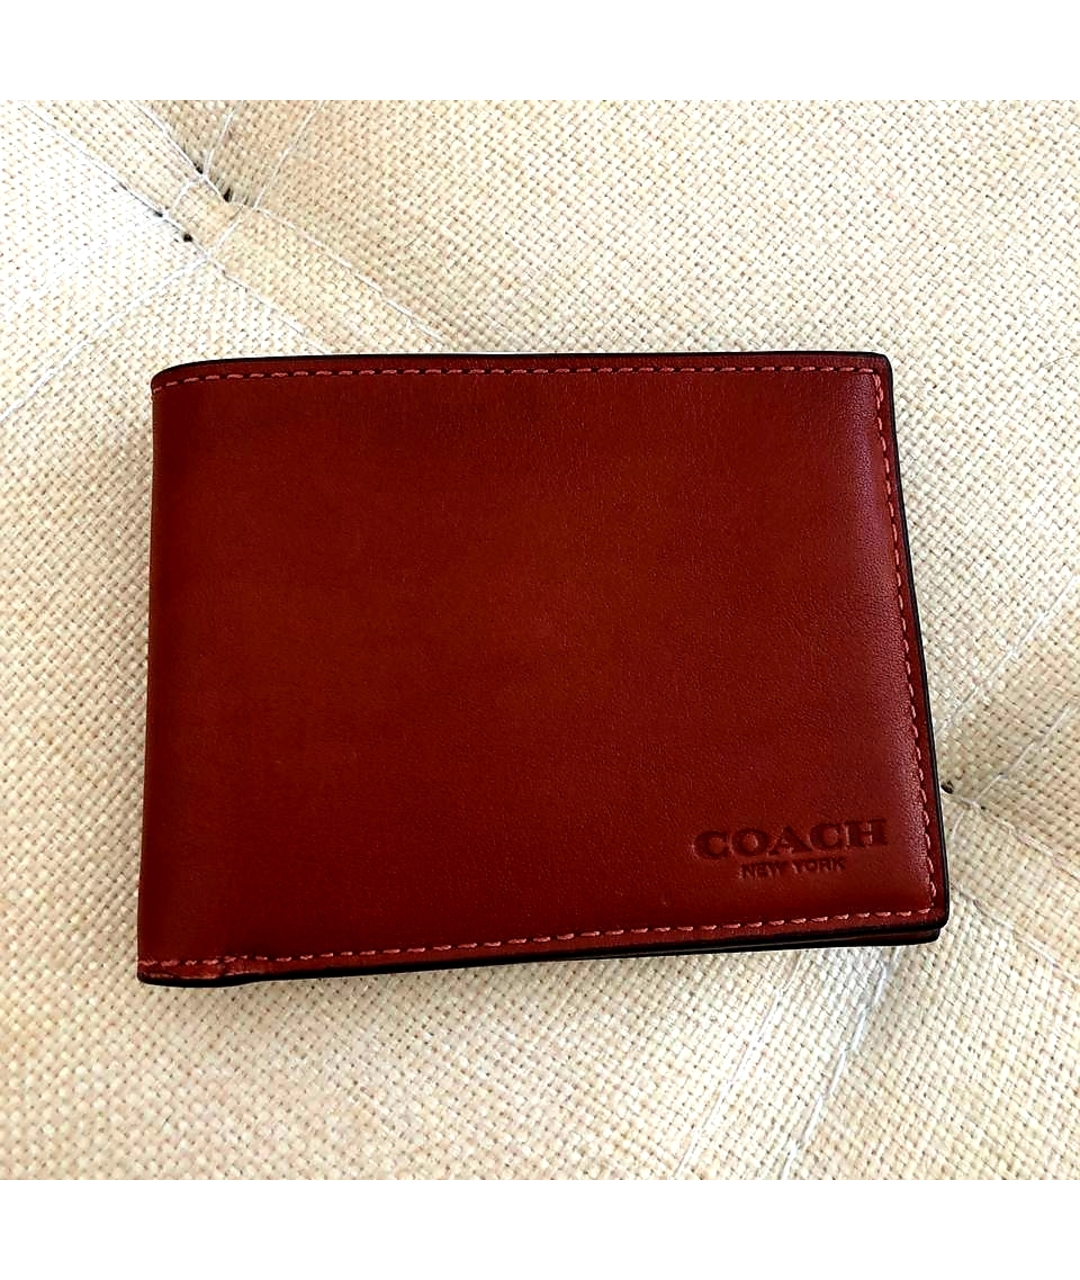 COACH Коричневый кожаный кошелек, фото 2